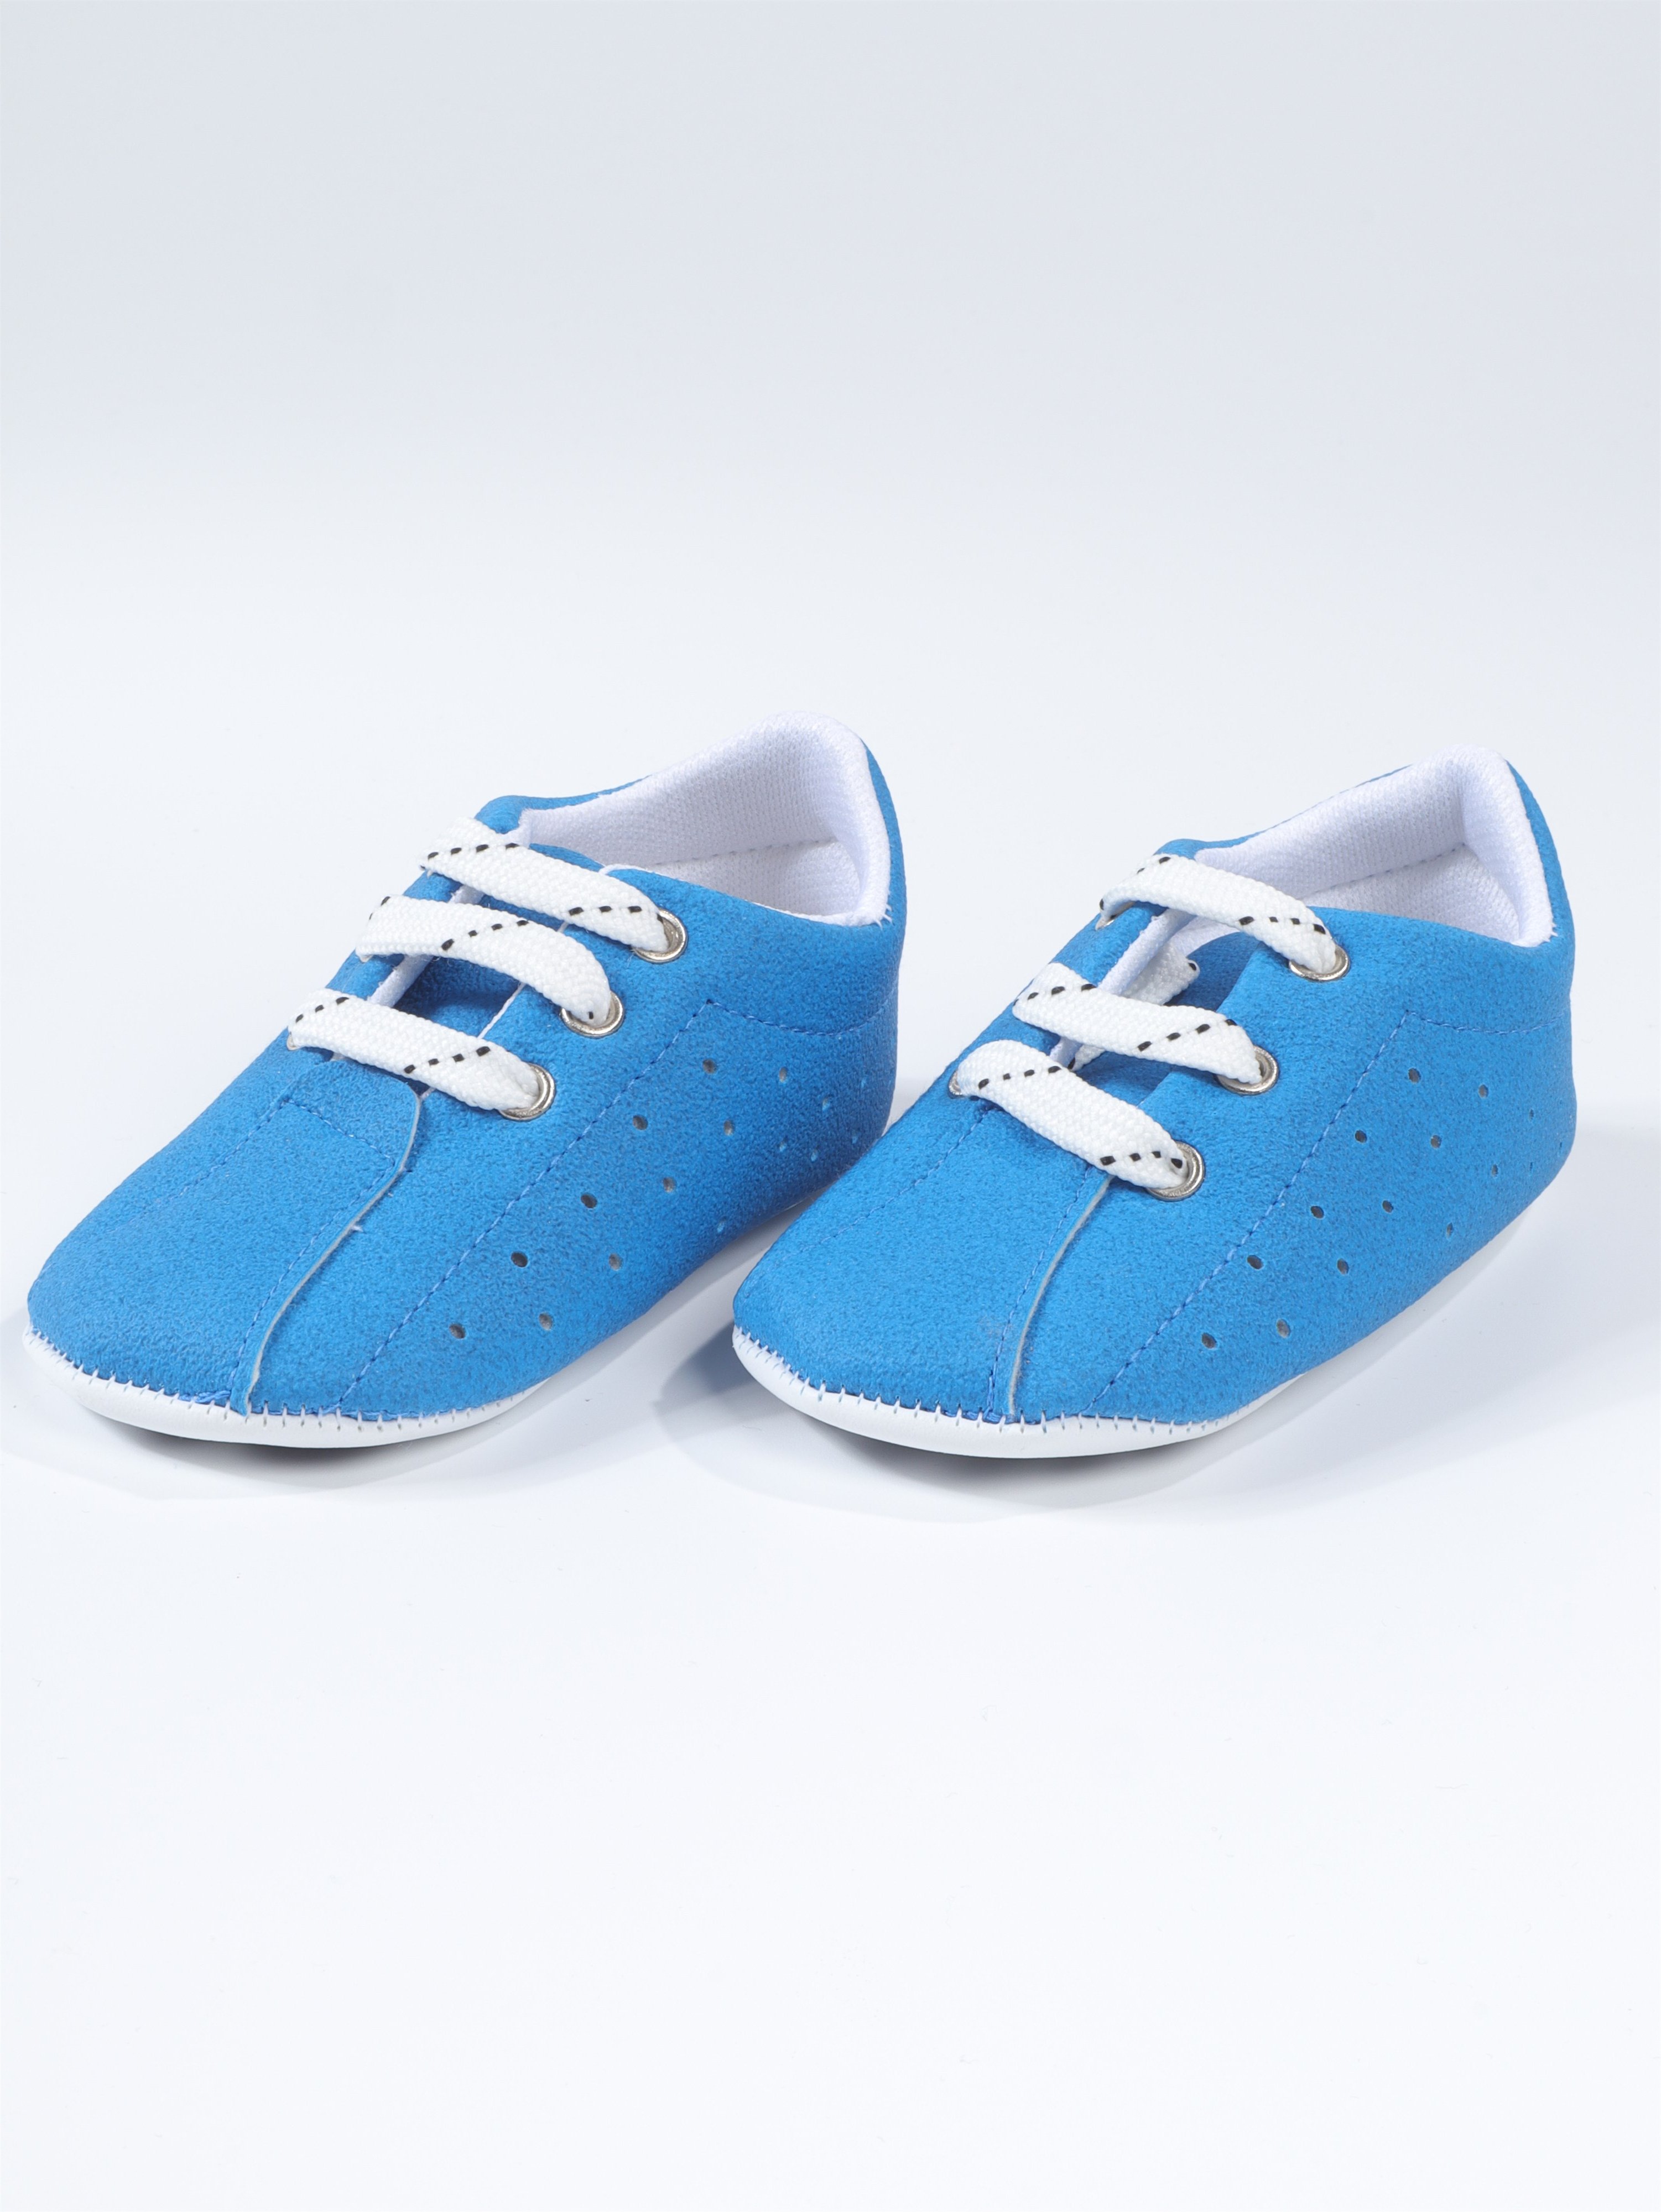 Bebek Ayakkabısı Mavi | 0-12 AY - YHH Kids